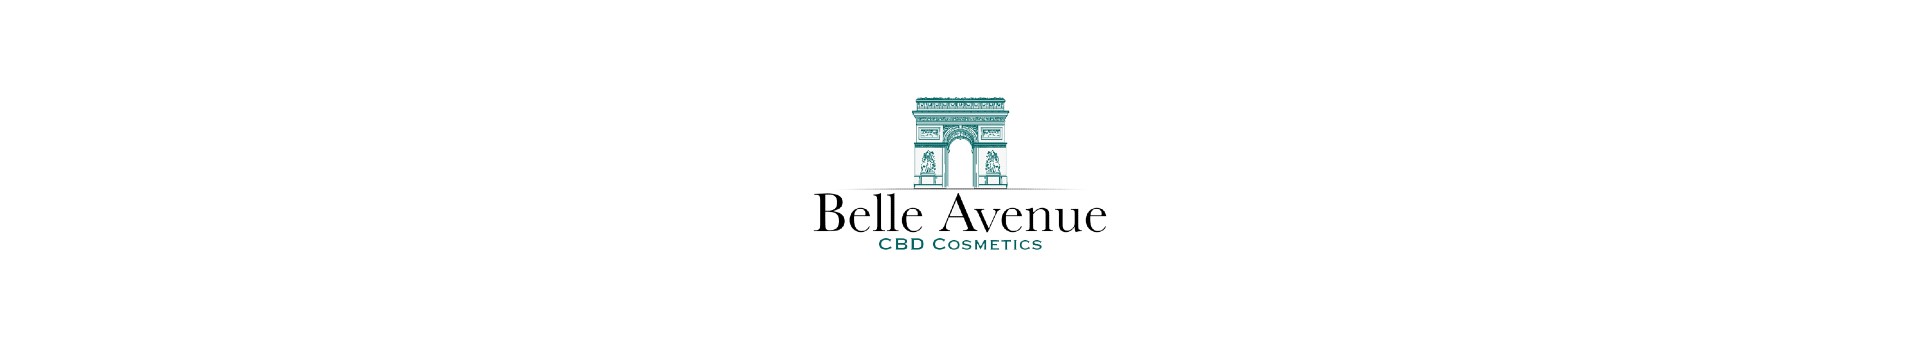 bandeau belle avenue cbd cosmetics pages marques partenaires